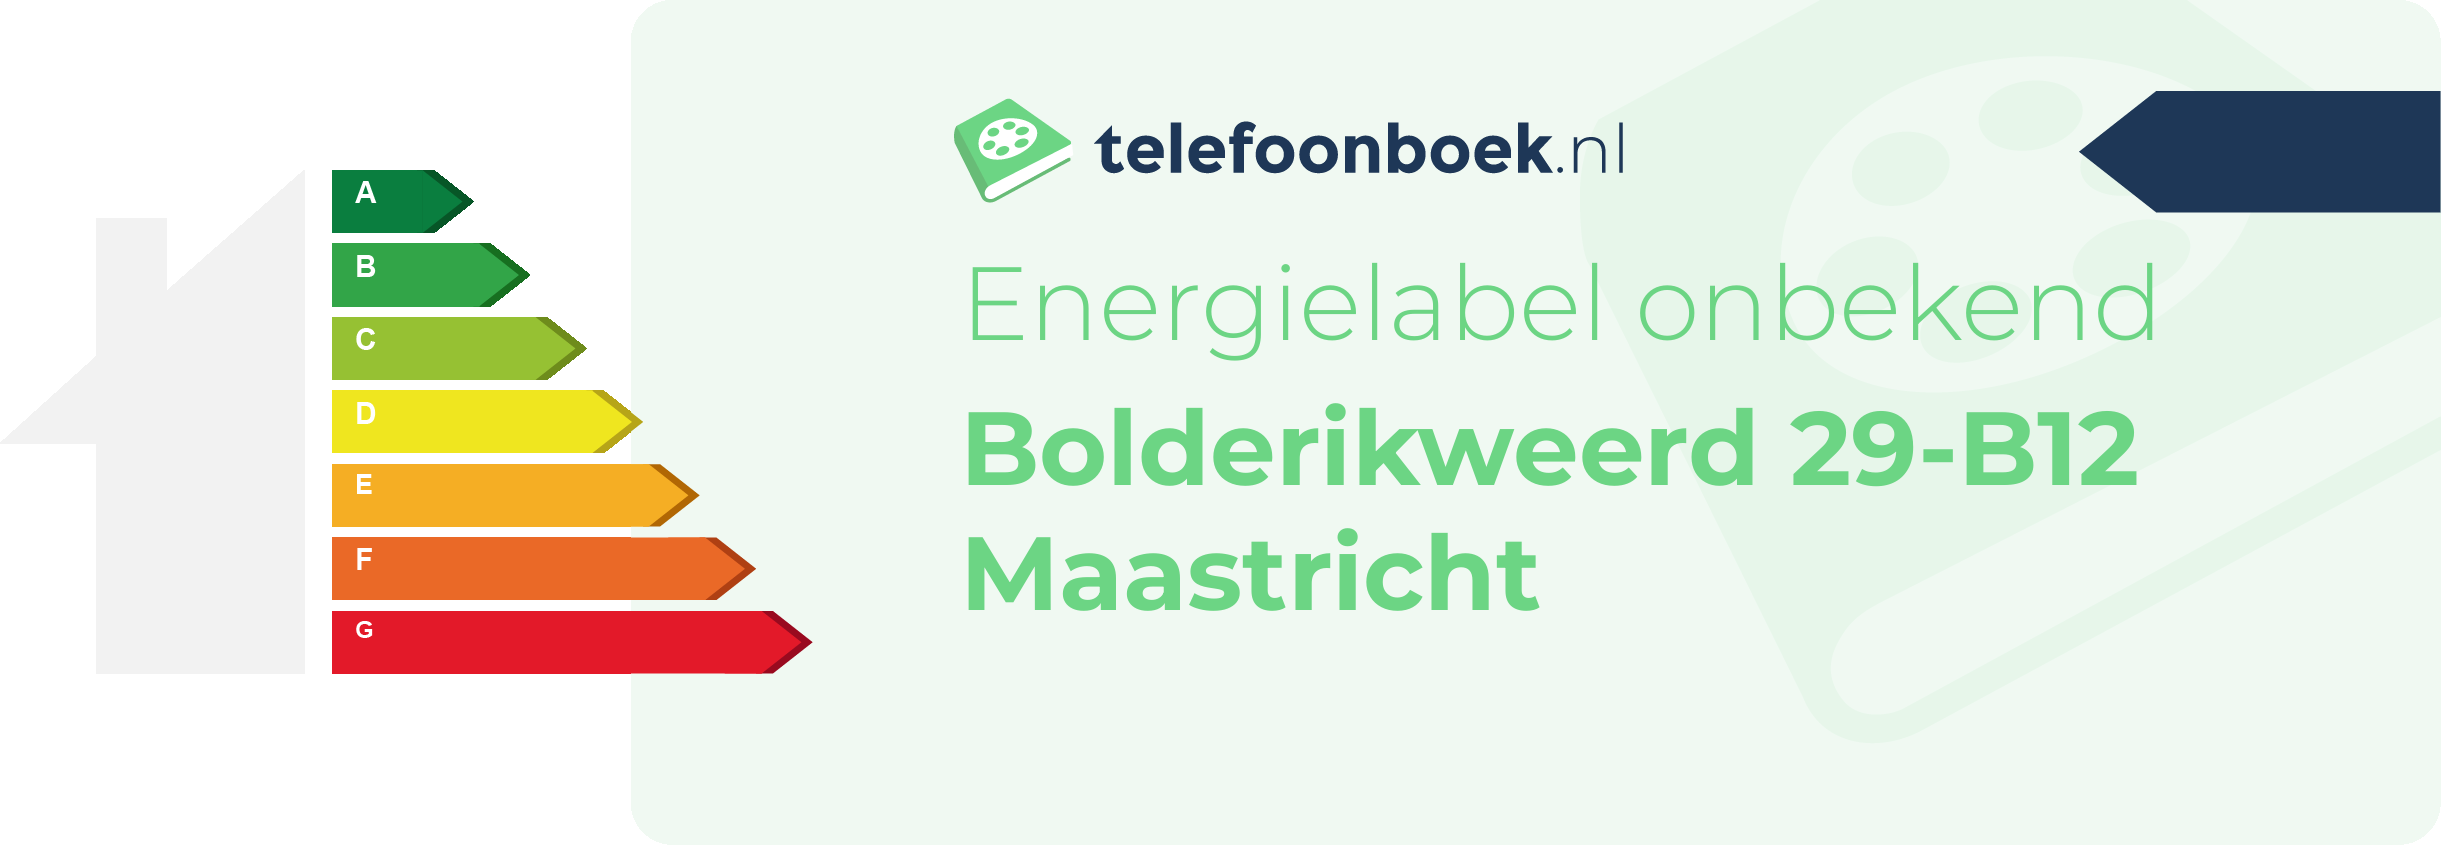 Energielabel Bolderikweerd 29-B12 Maastricht